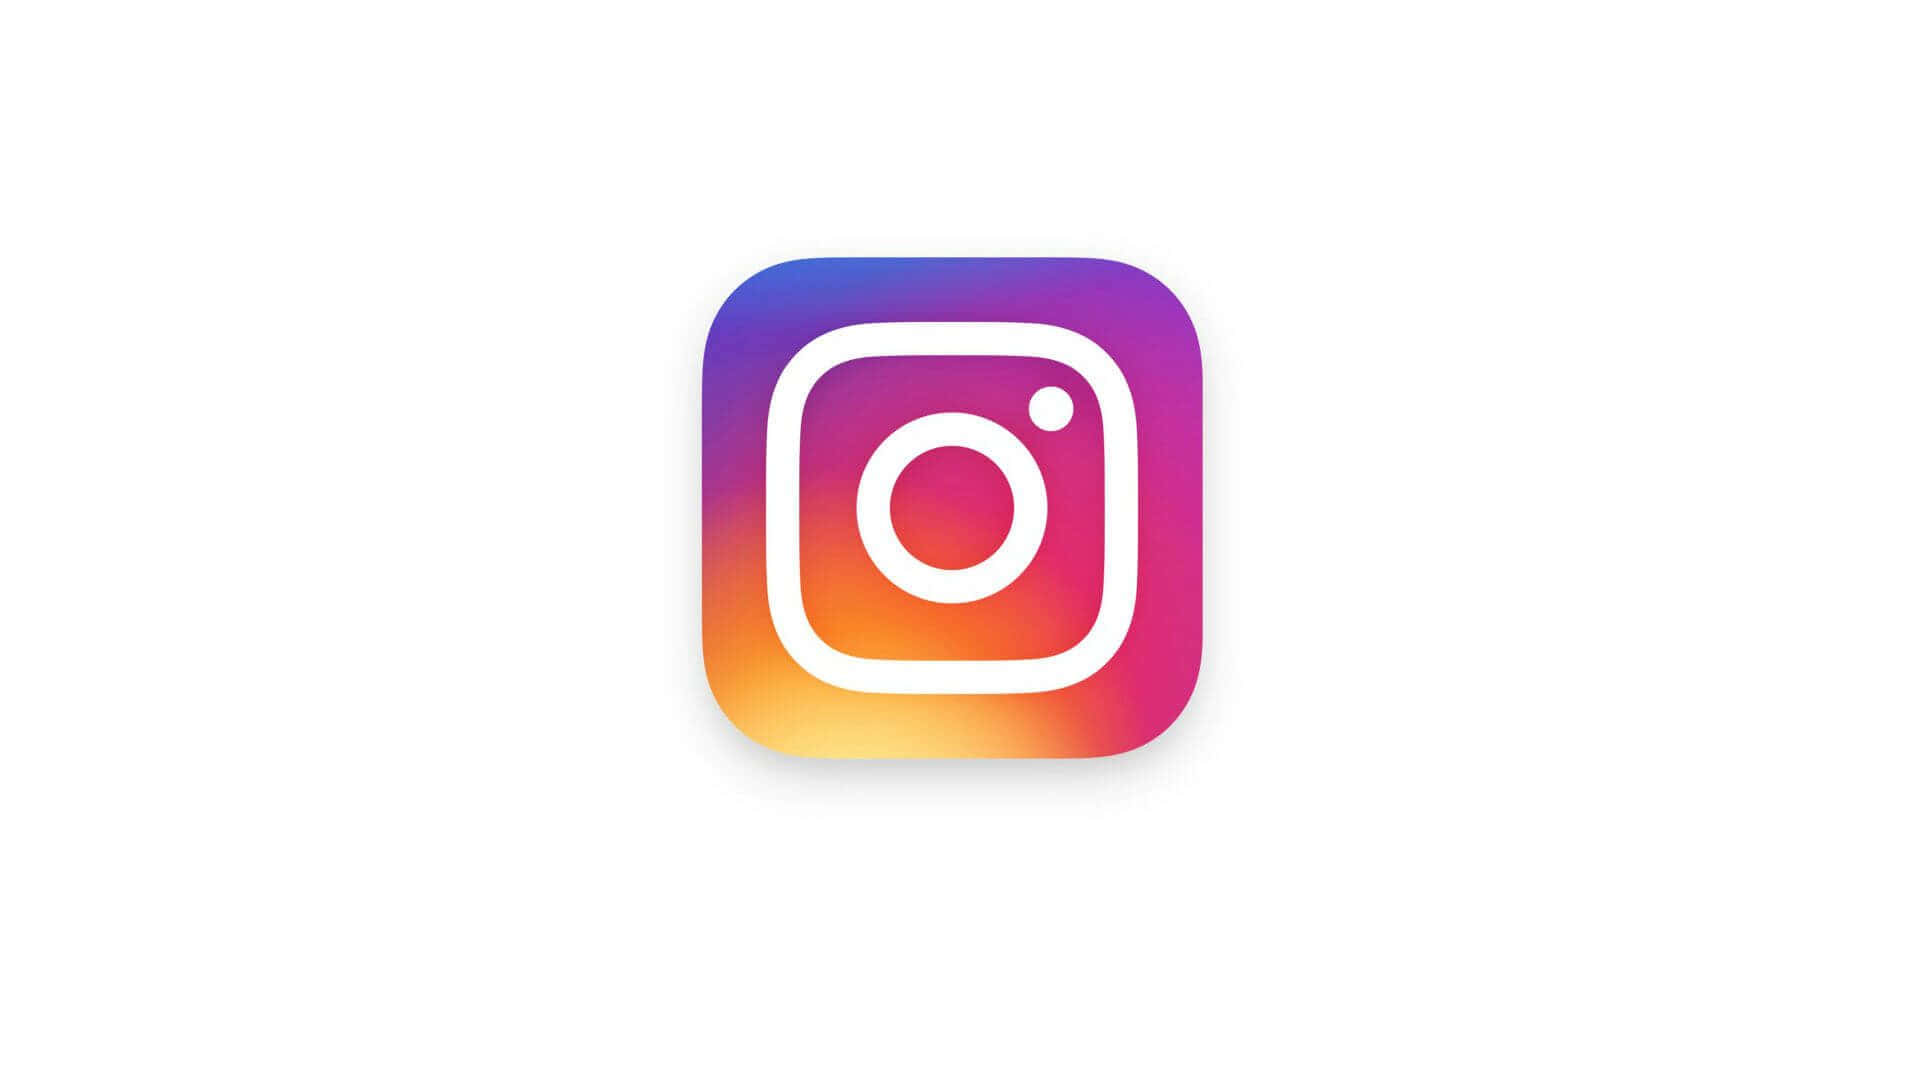 Aesthetic Instagram New Logo 2019 Wallpaper